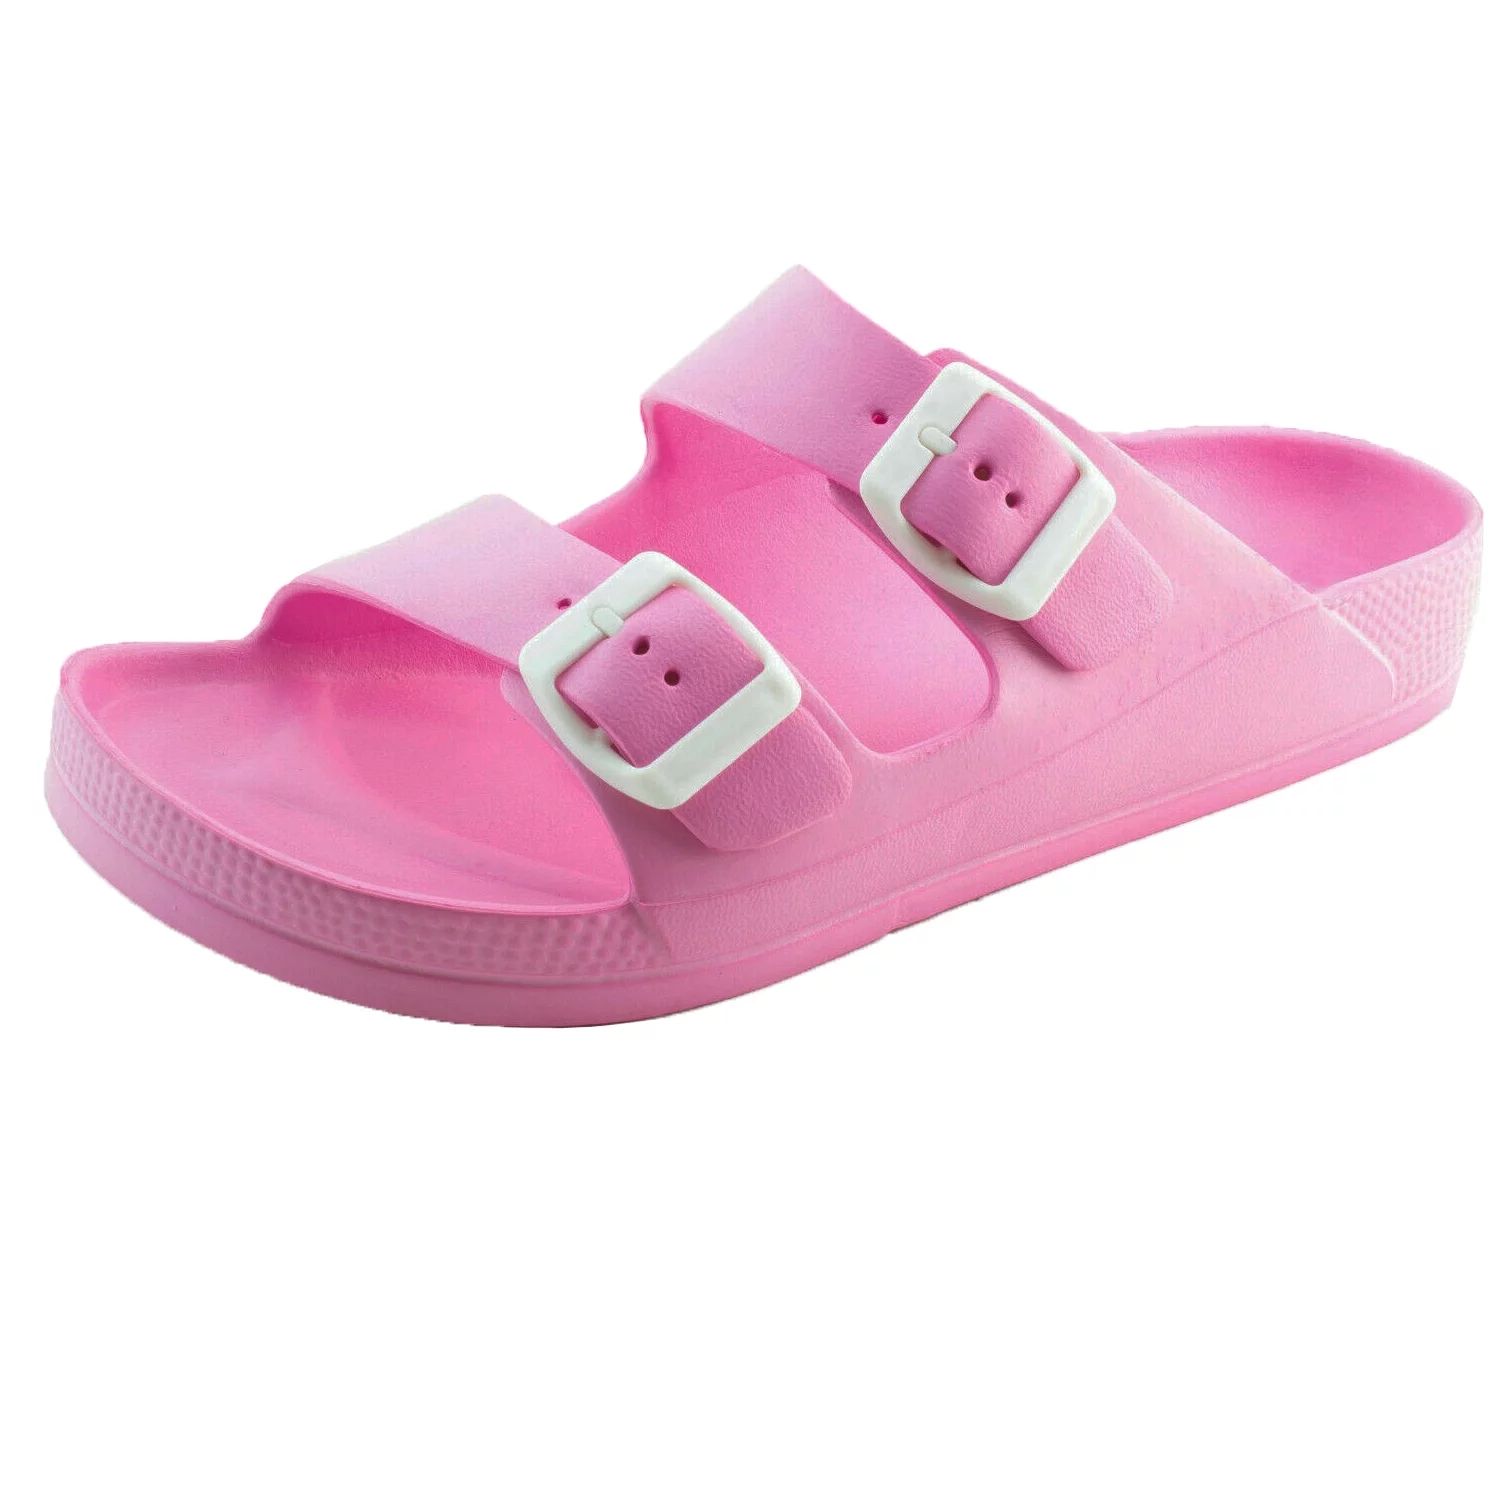 Women's Lightweight Comfort Soft Slides EVA Adjustable Double Buckle Flat Sandals | Walmart (US)